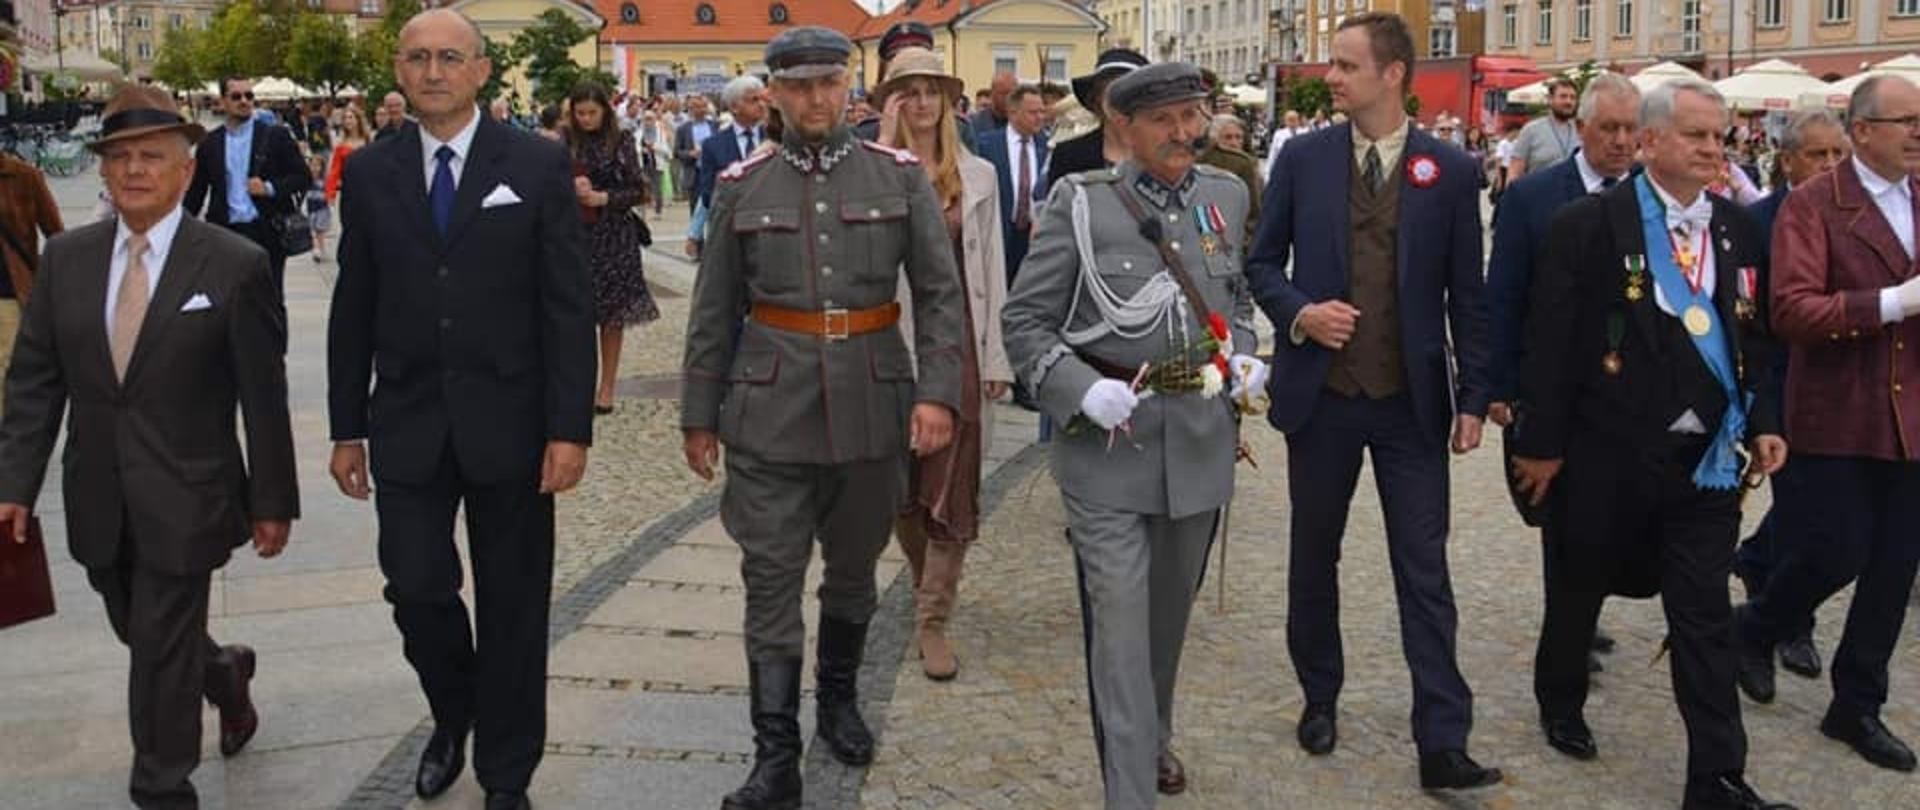 100-lecie nadania Honorowego Obywatelstwa miasta Białegostoku Marszałkowi J. Piłsudskiemu
